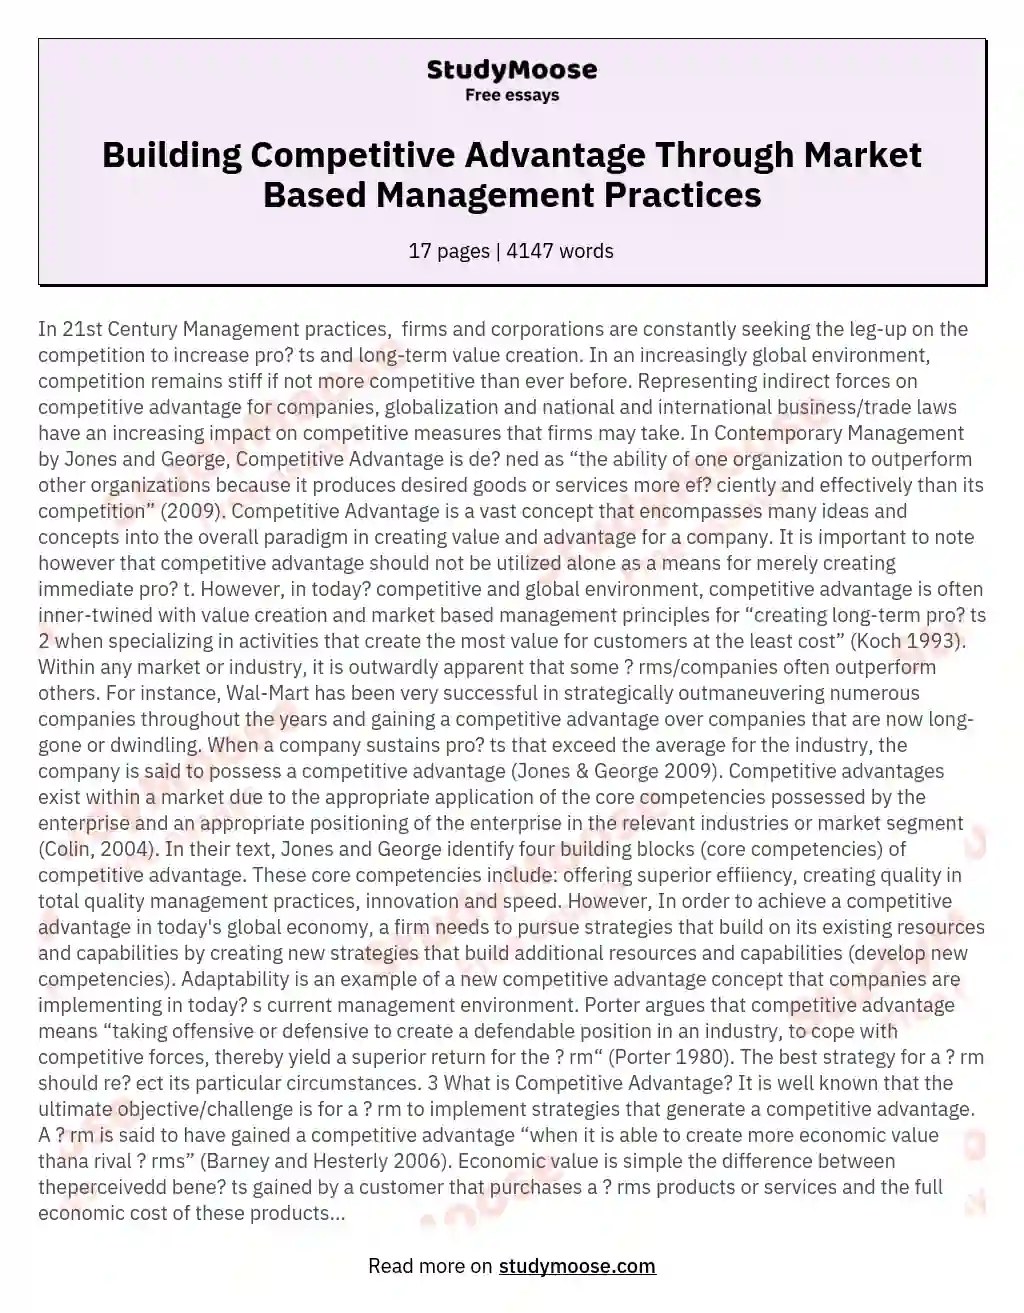 Building Competitive Advantage Through Market Based Management Practices essay